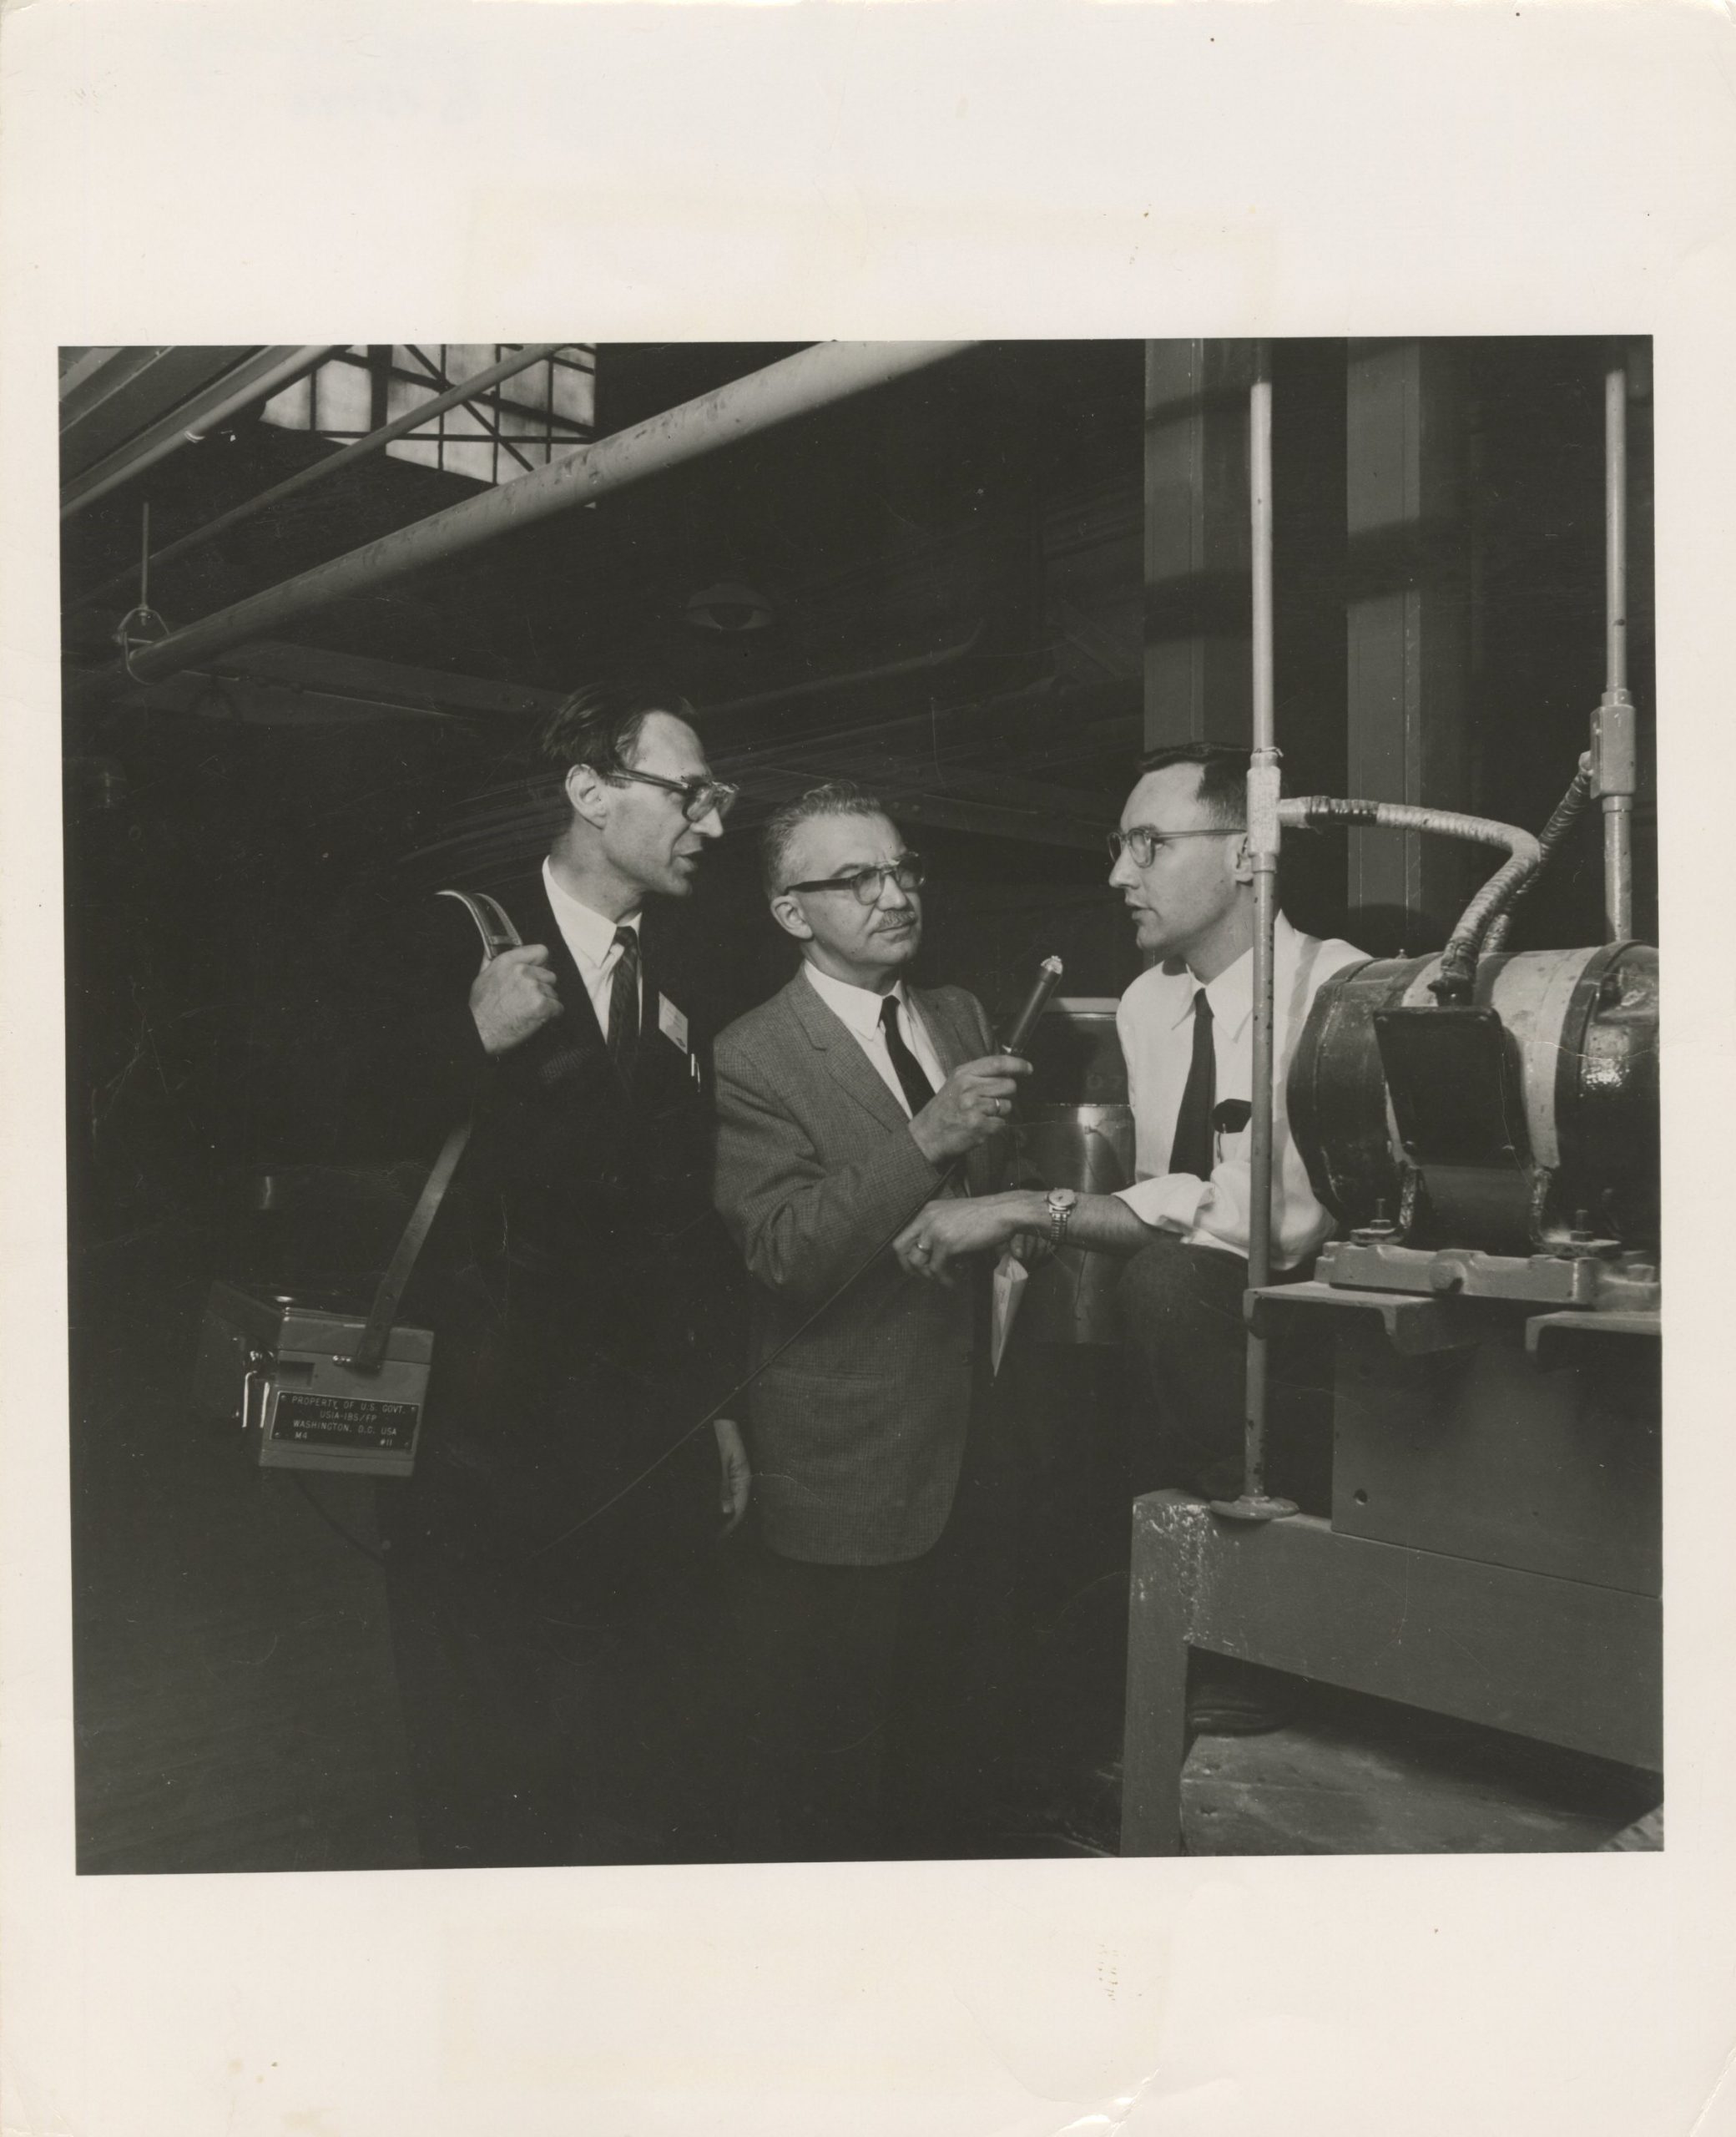 J. Blekaitis (iš kairės) su M. Voznickiu ima interviu iš R. Carlson. Apie 1970 m.